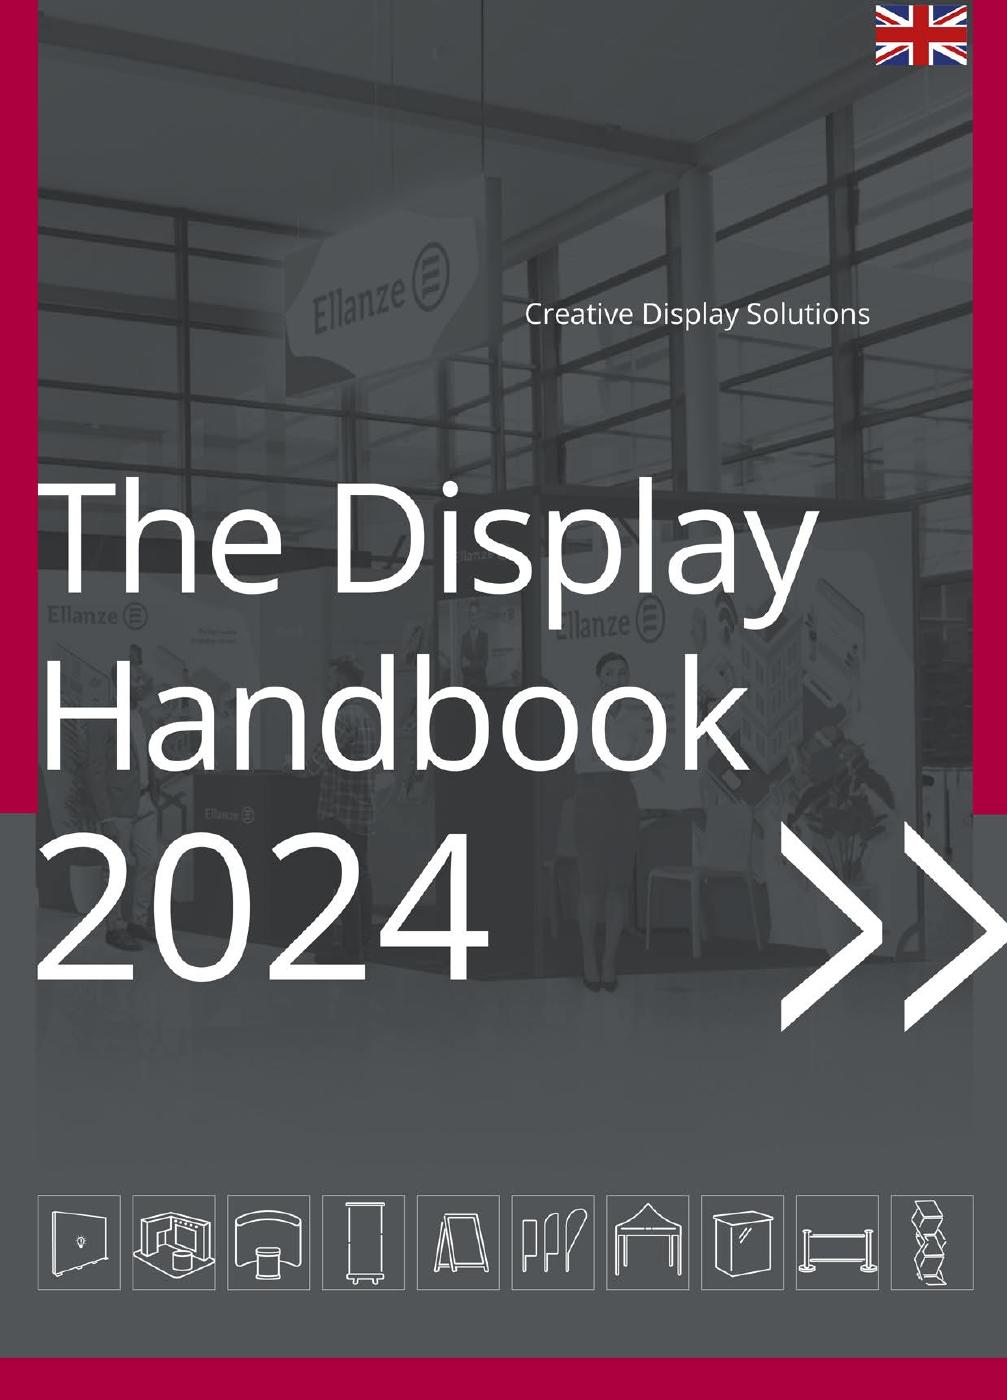 Katalog-The Display Handbook 2024